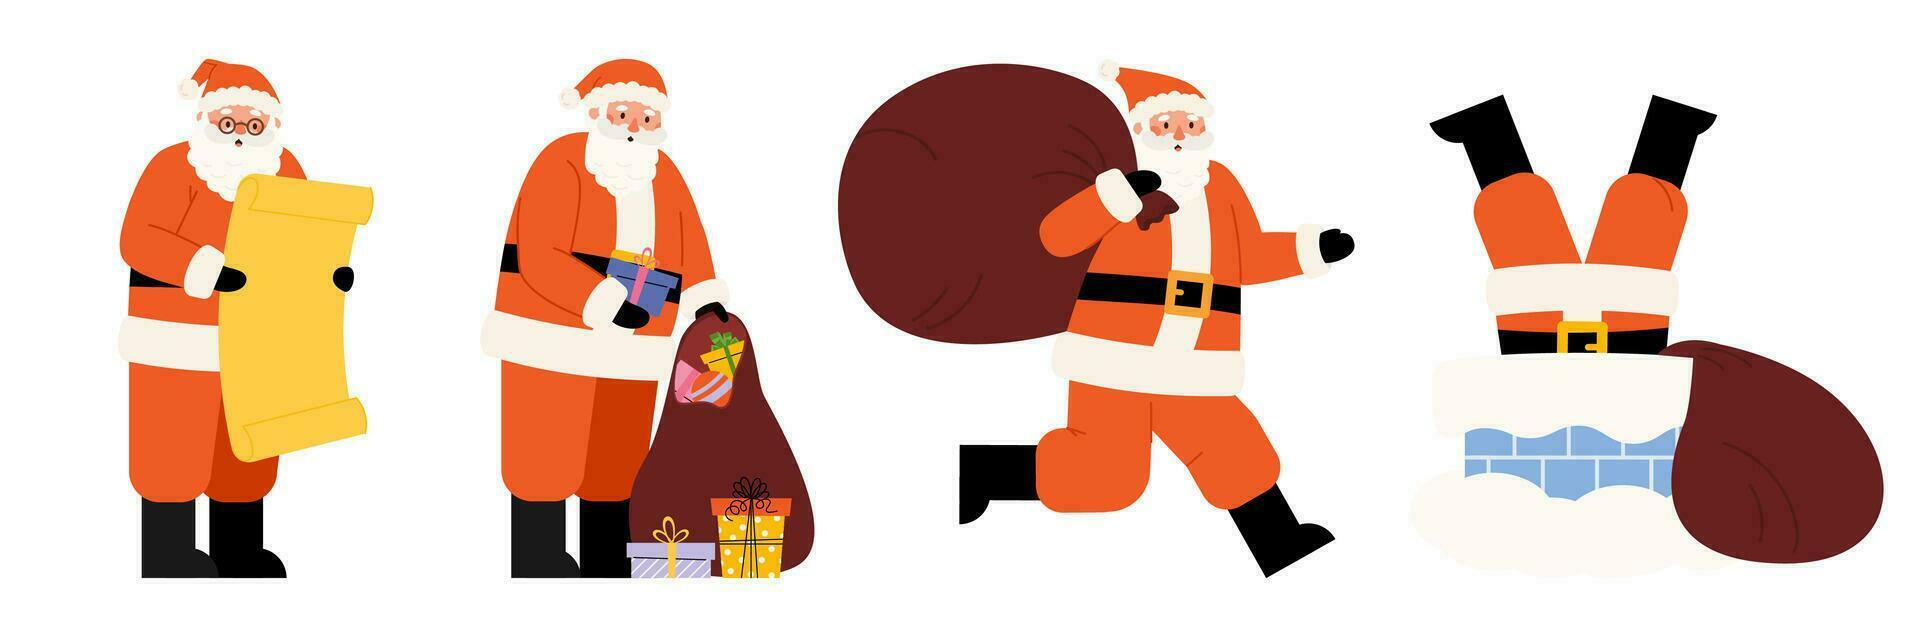 conjunto de Papa Noel cláusulas en diferente poses vector